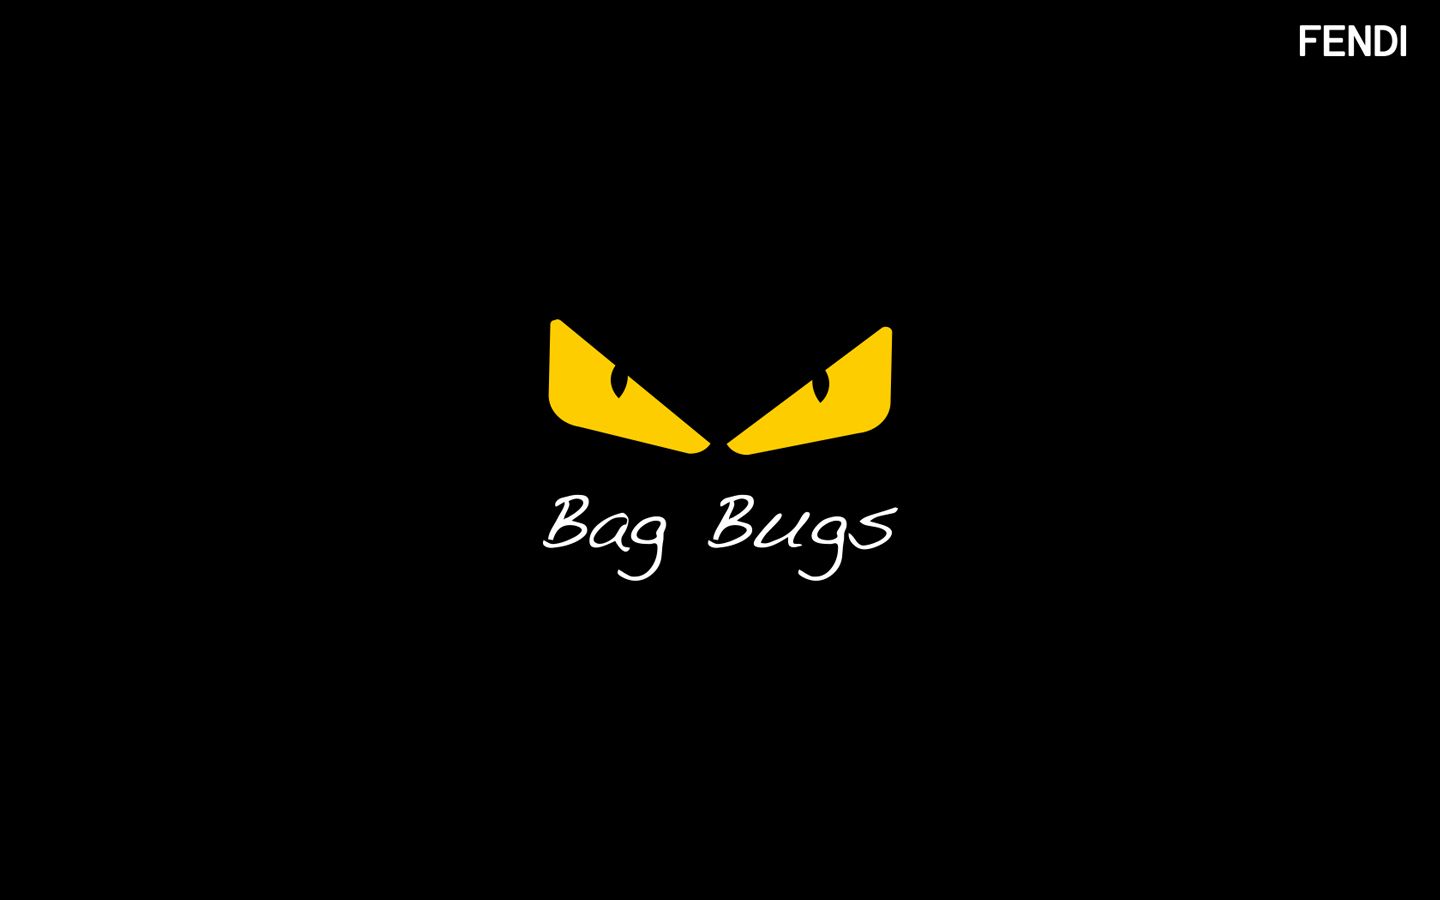 Fendi Ideas Bag Bugs Monster